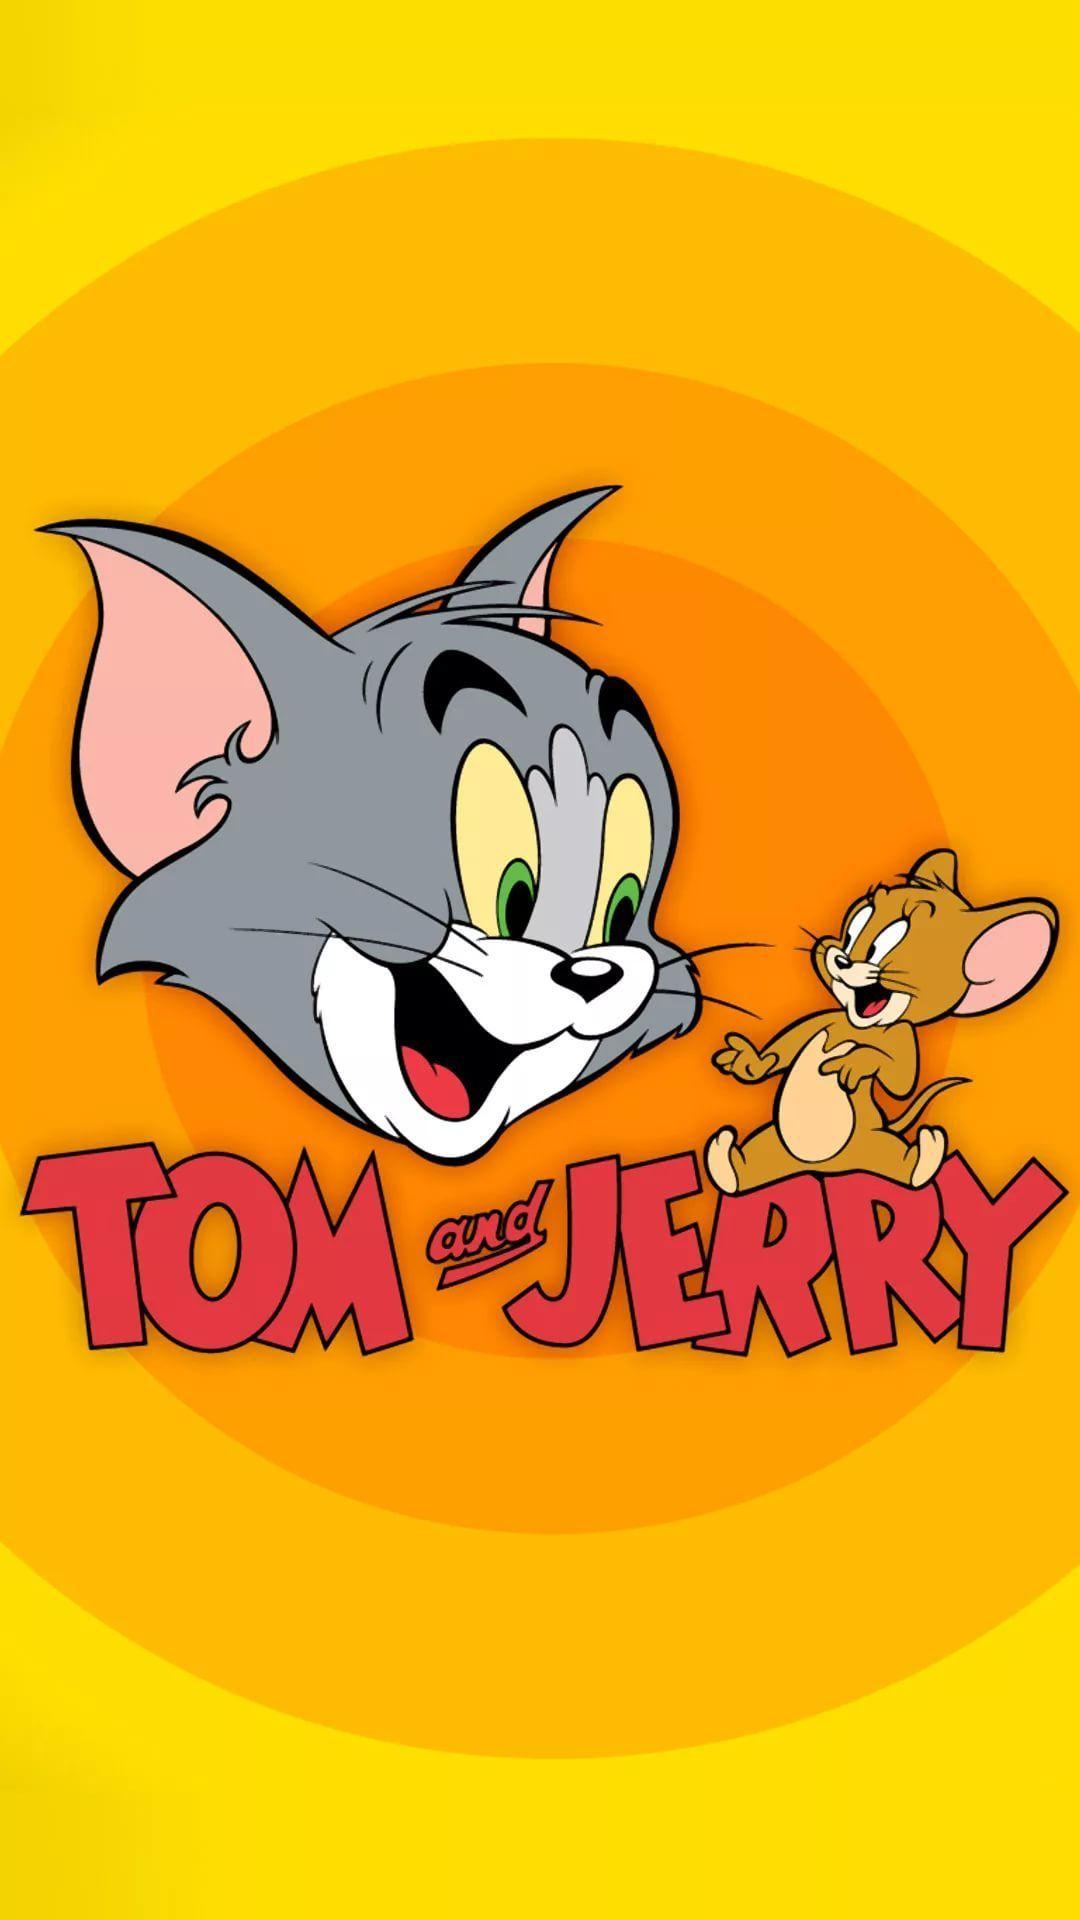 Tom and Jerry iPhone Wallpapers - Top Những Hình Ảnh Đẹp